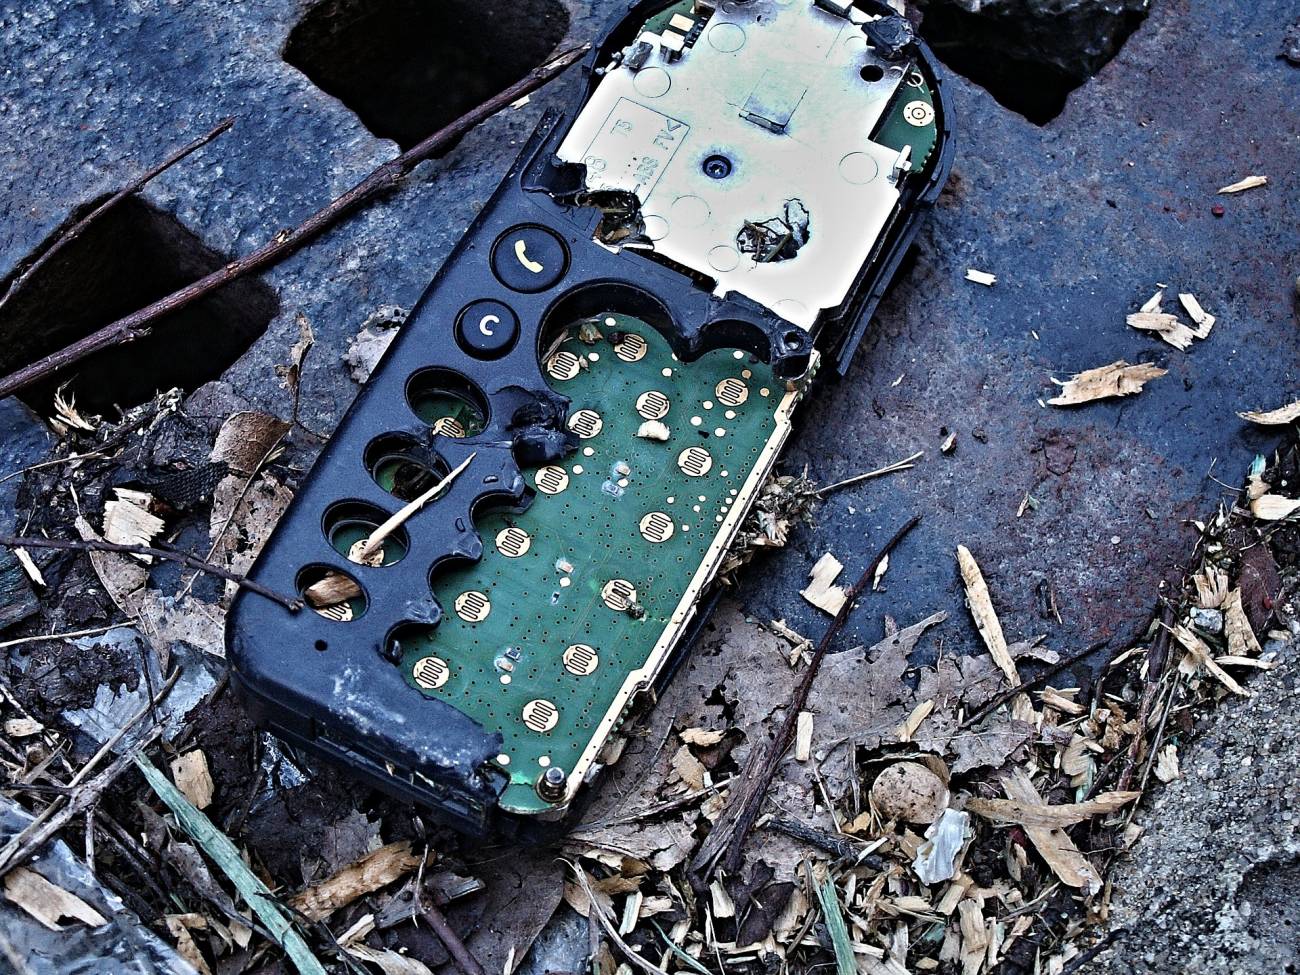 El desmantelamiento de residuos electronicos expone a compuestos peligrosos para la salud